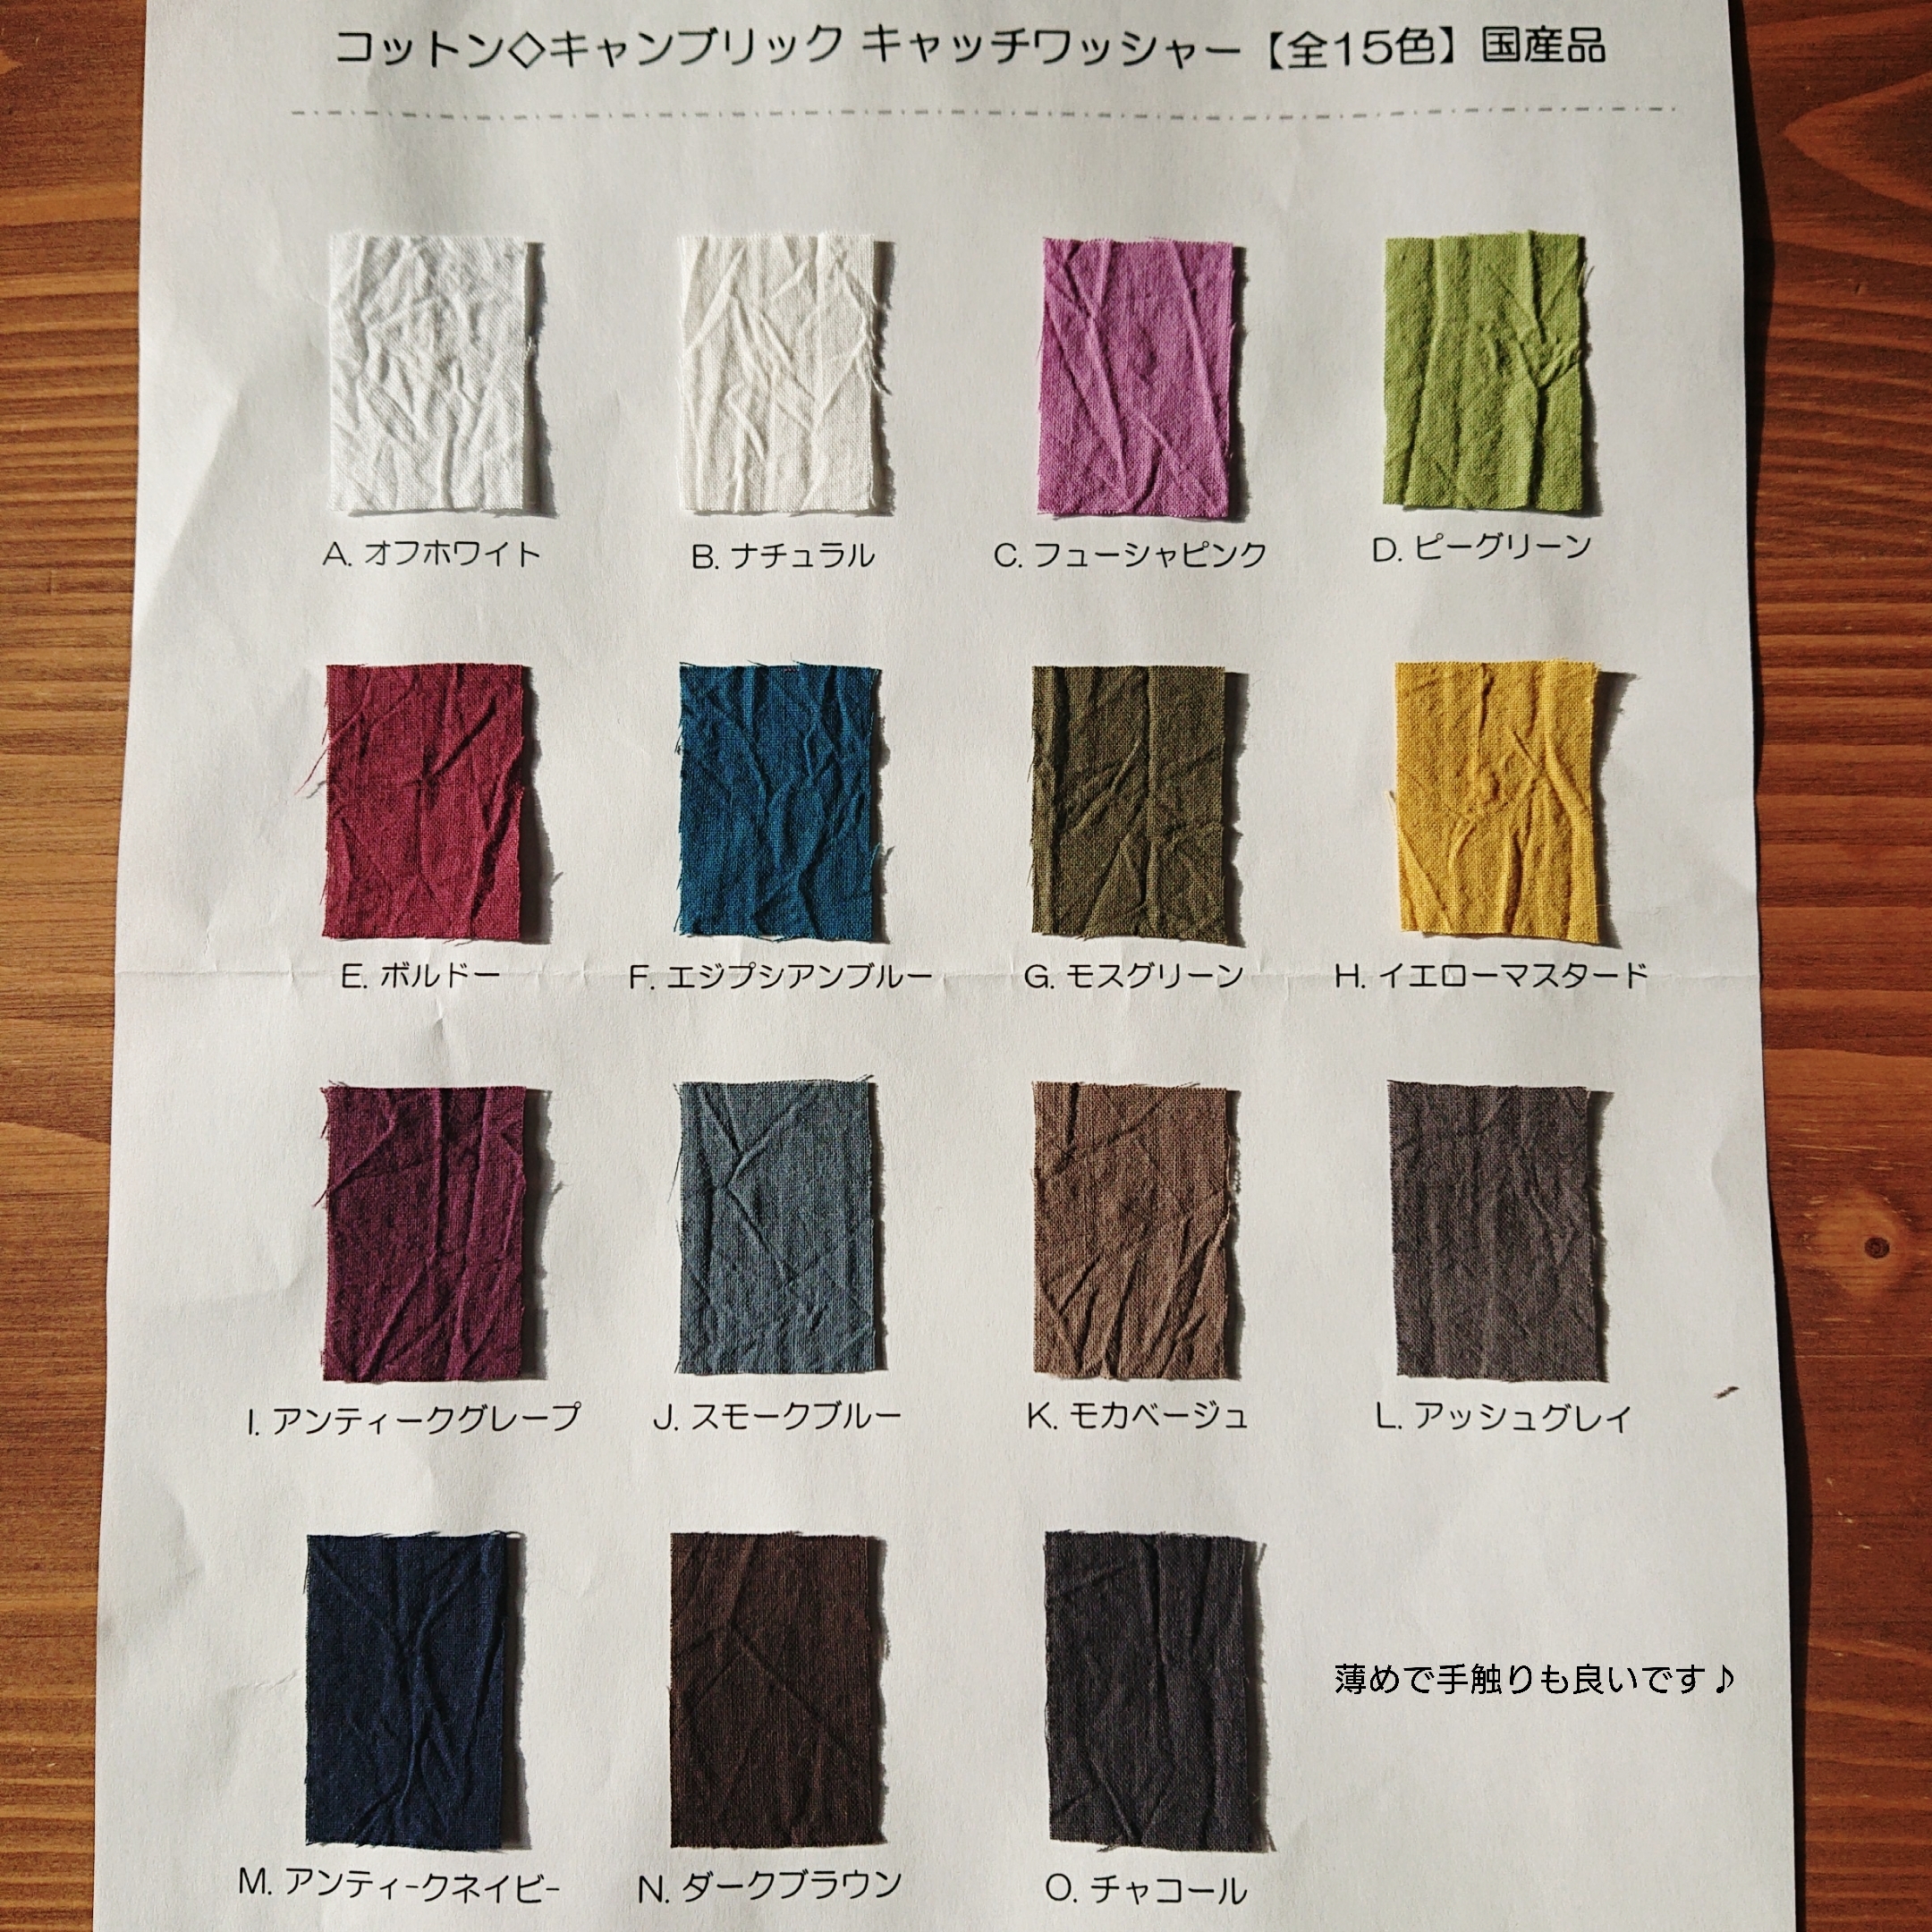 オーダーメイドの色見本 Iichi ハンドメイド クラフト作品 手仕事品の通販